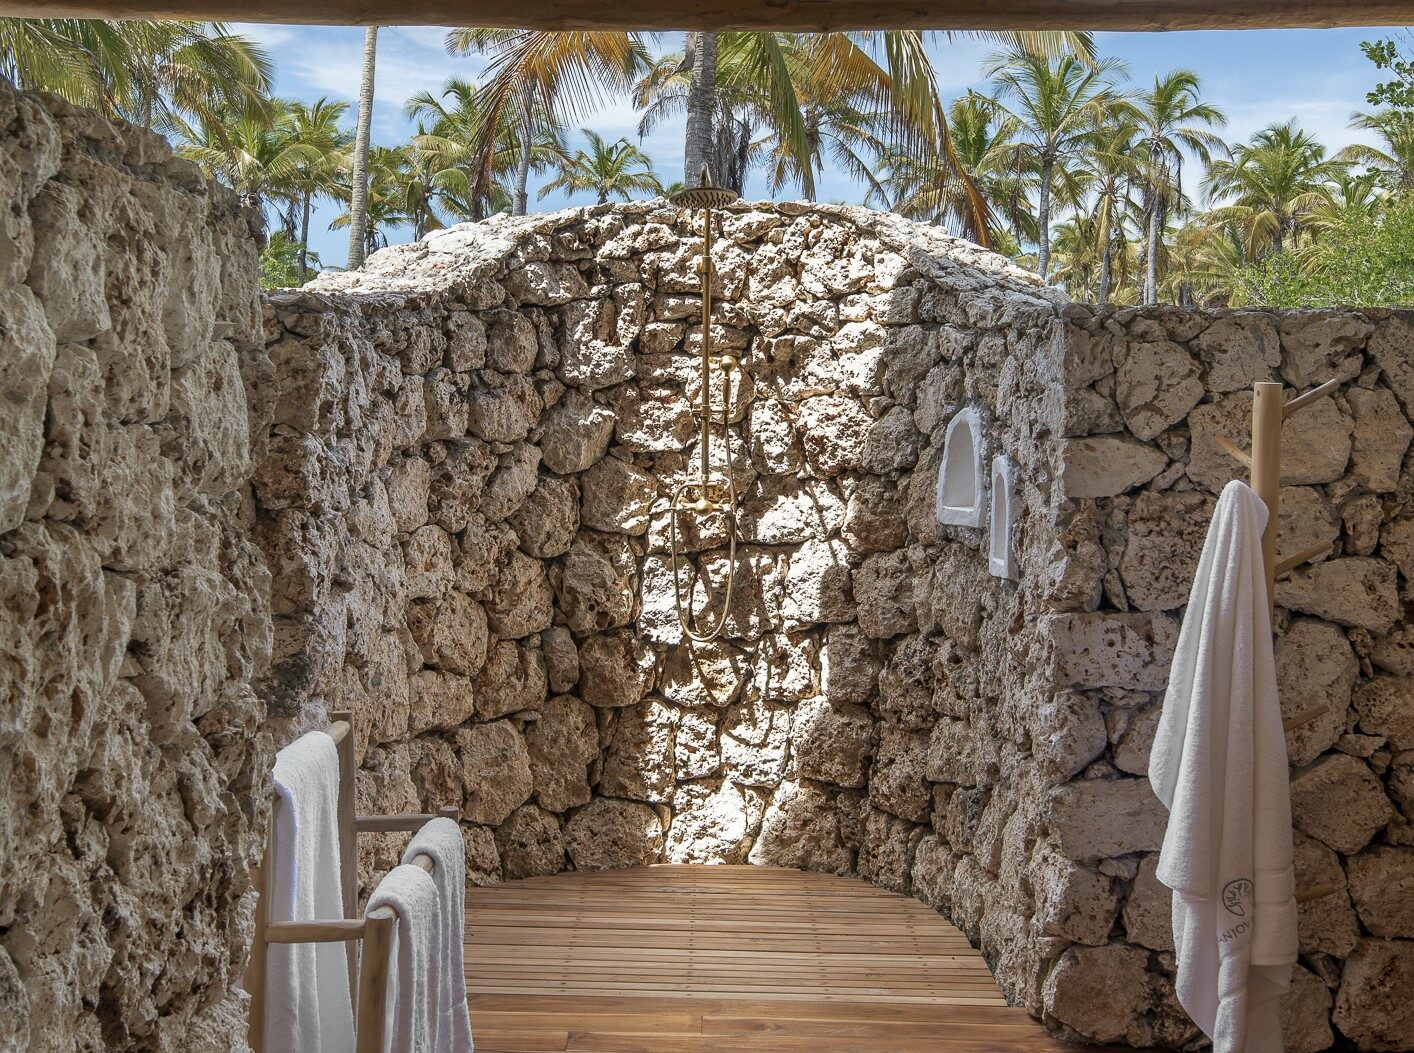 Salle de bain extérieure d'une suite à Fanjove Island, île de Mafia.